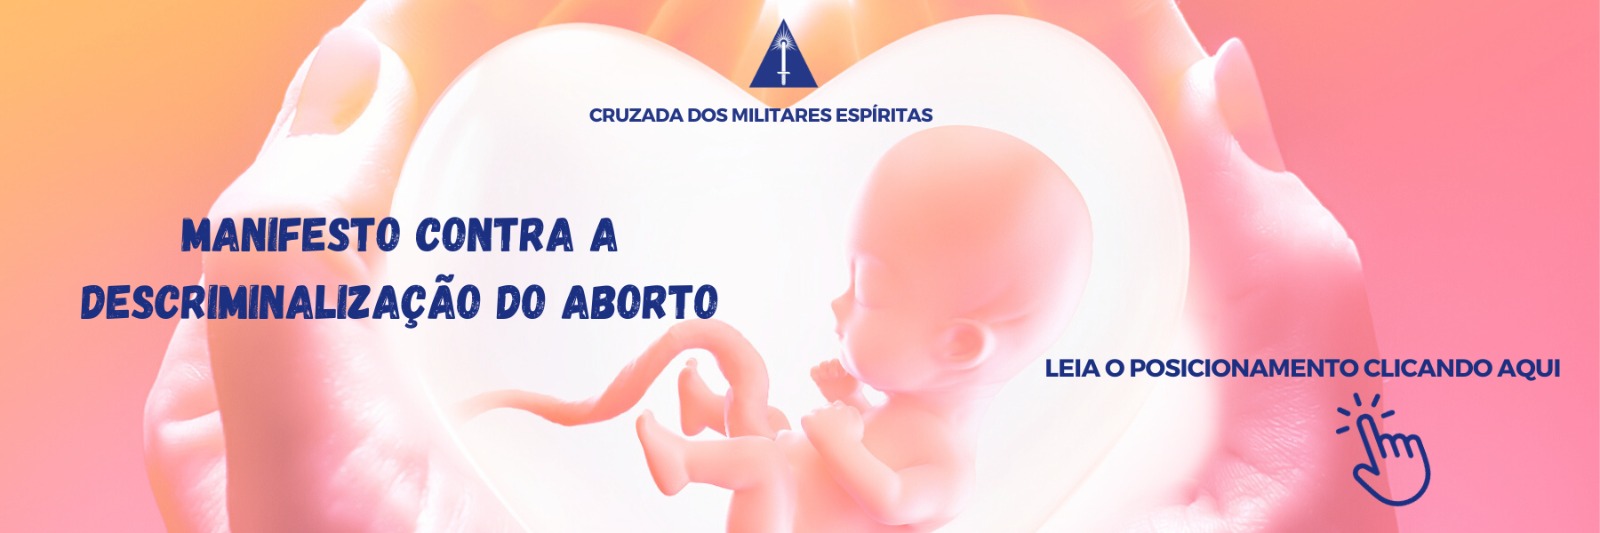 Manifesto contra a descriminalização do aborto